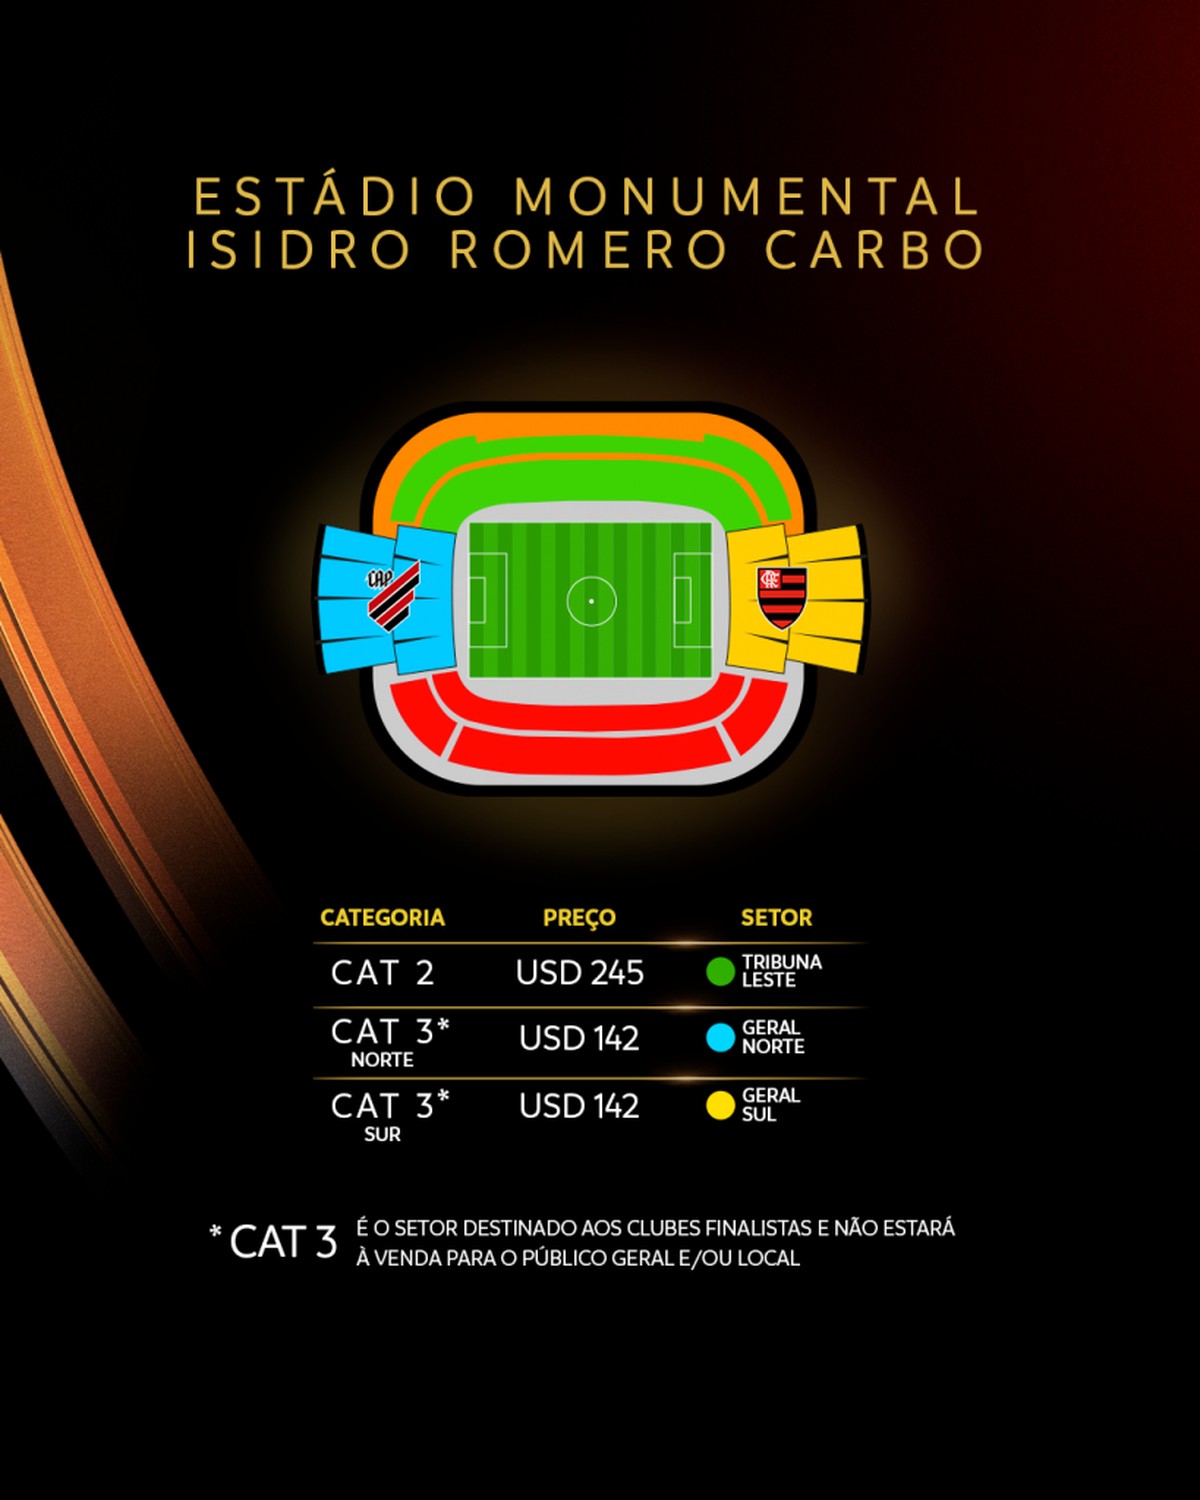 Libertadores 2022: saiba onde assistir aos jogos da semana na TV e